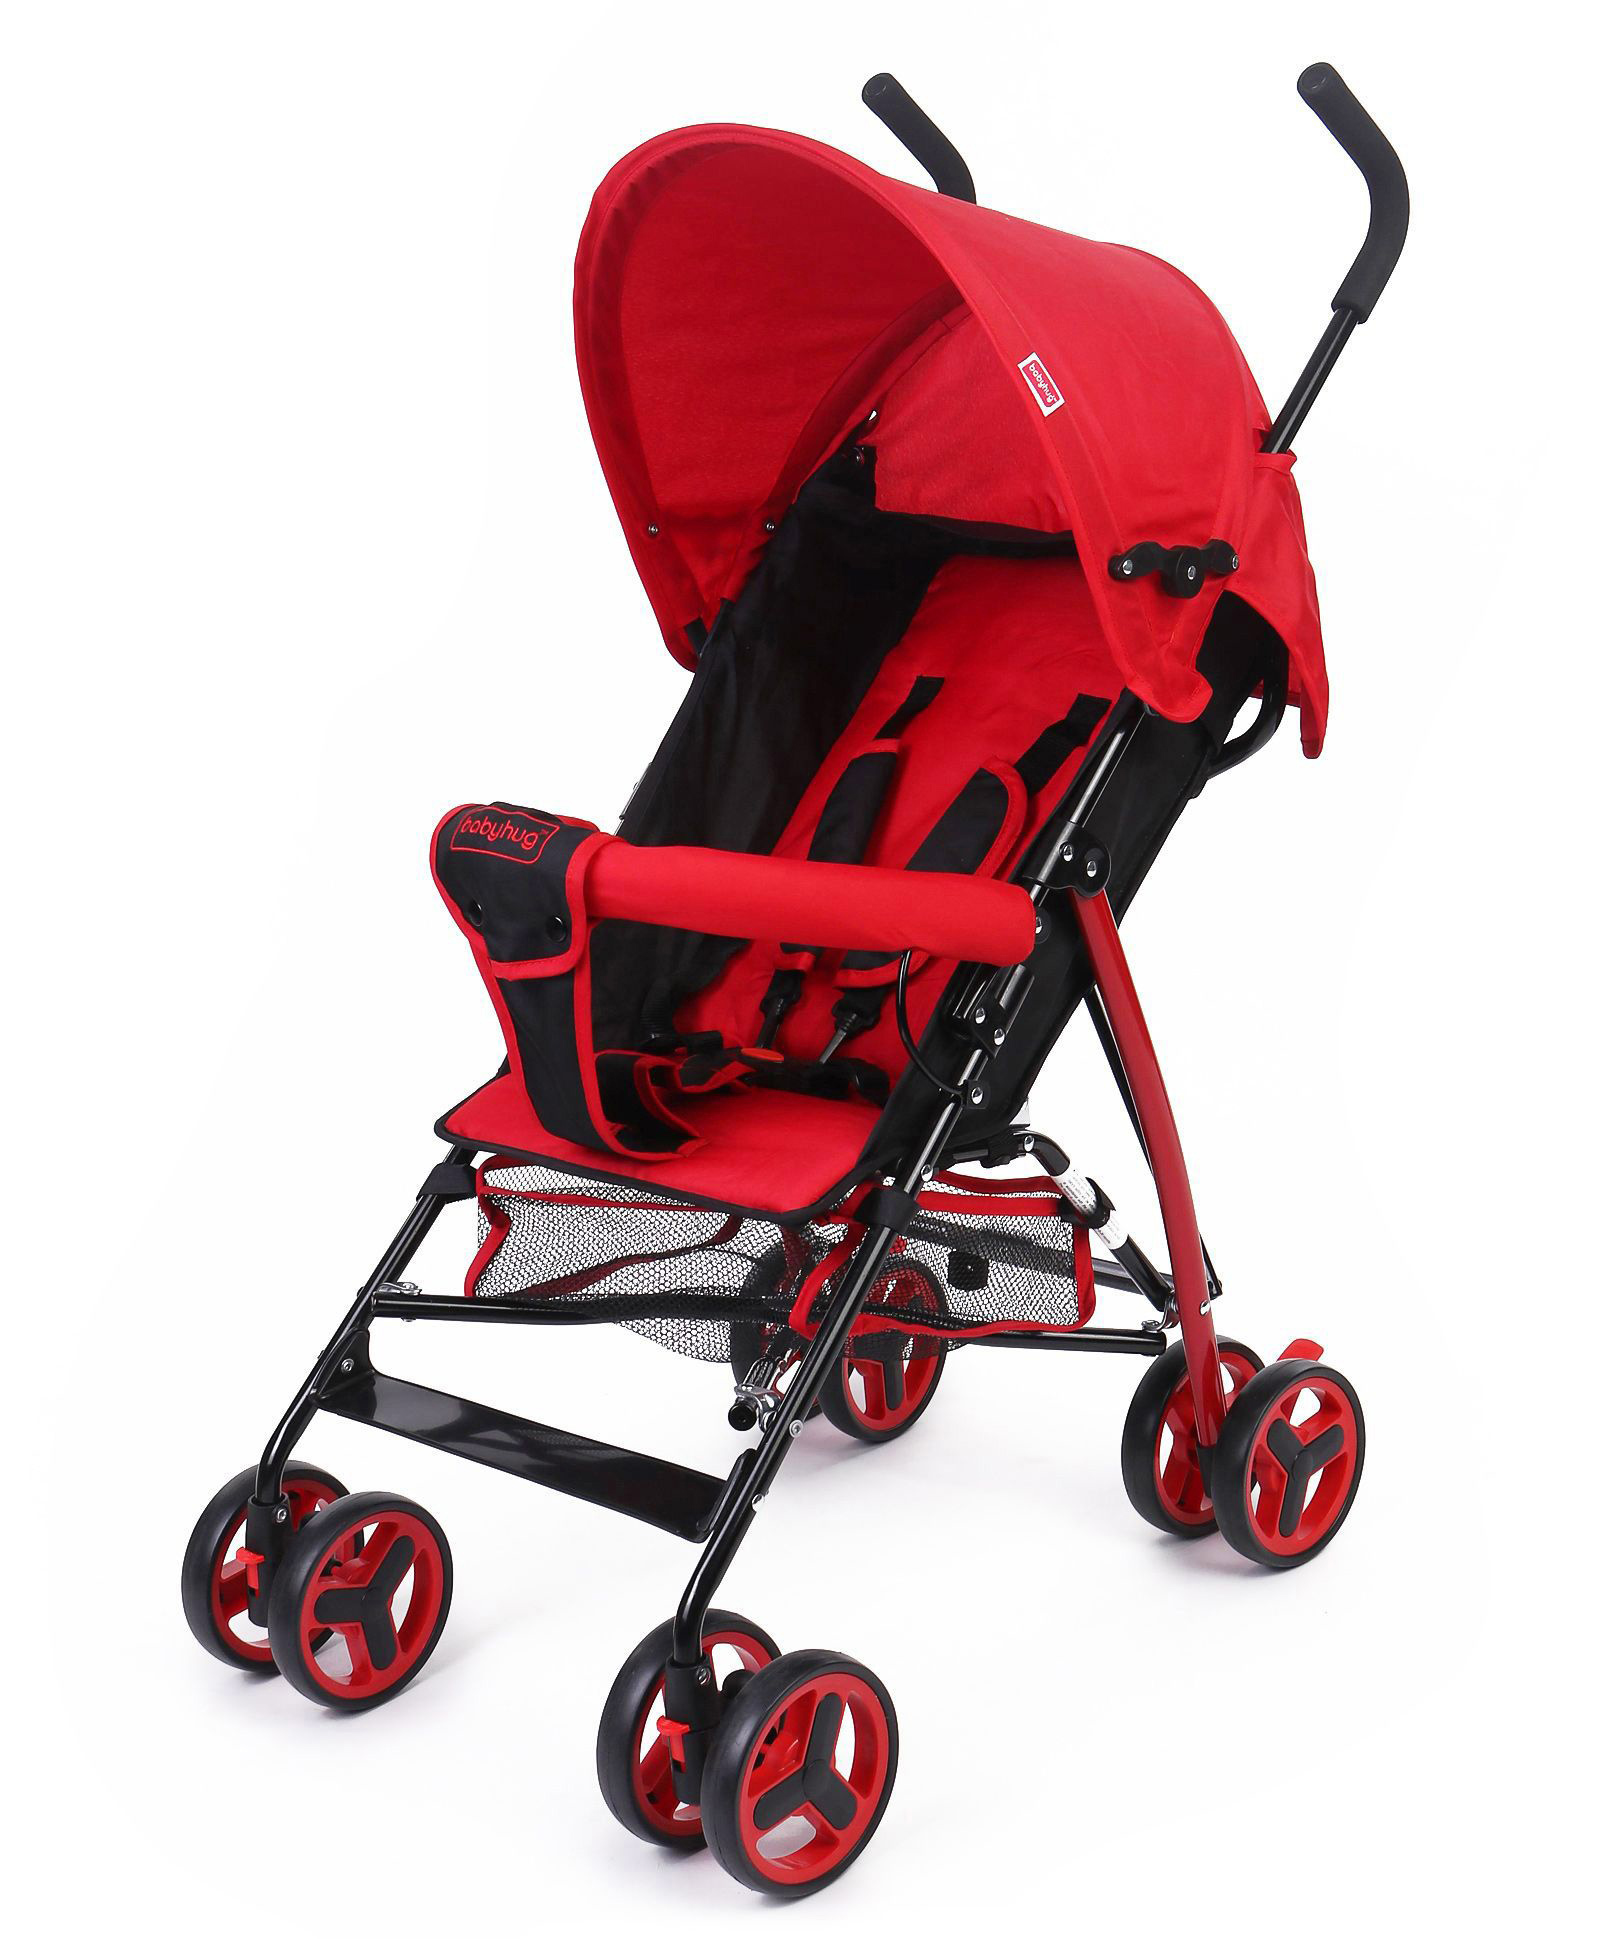 babyhug agile baby stroller